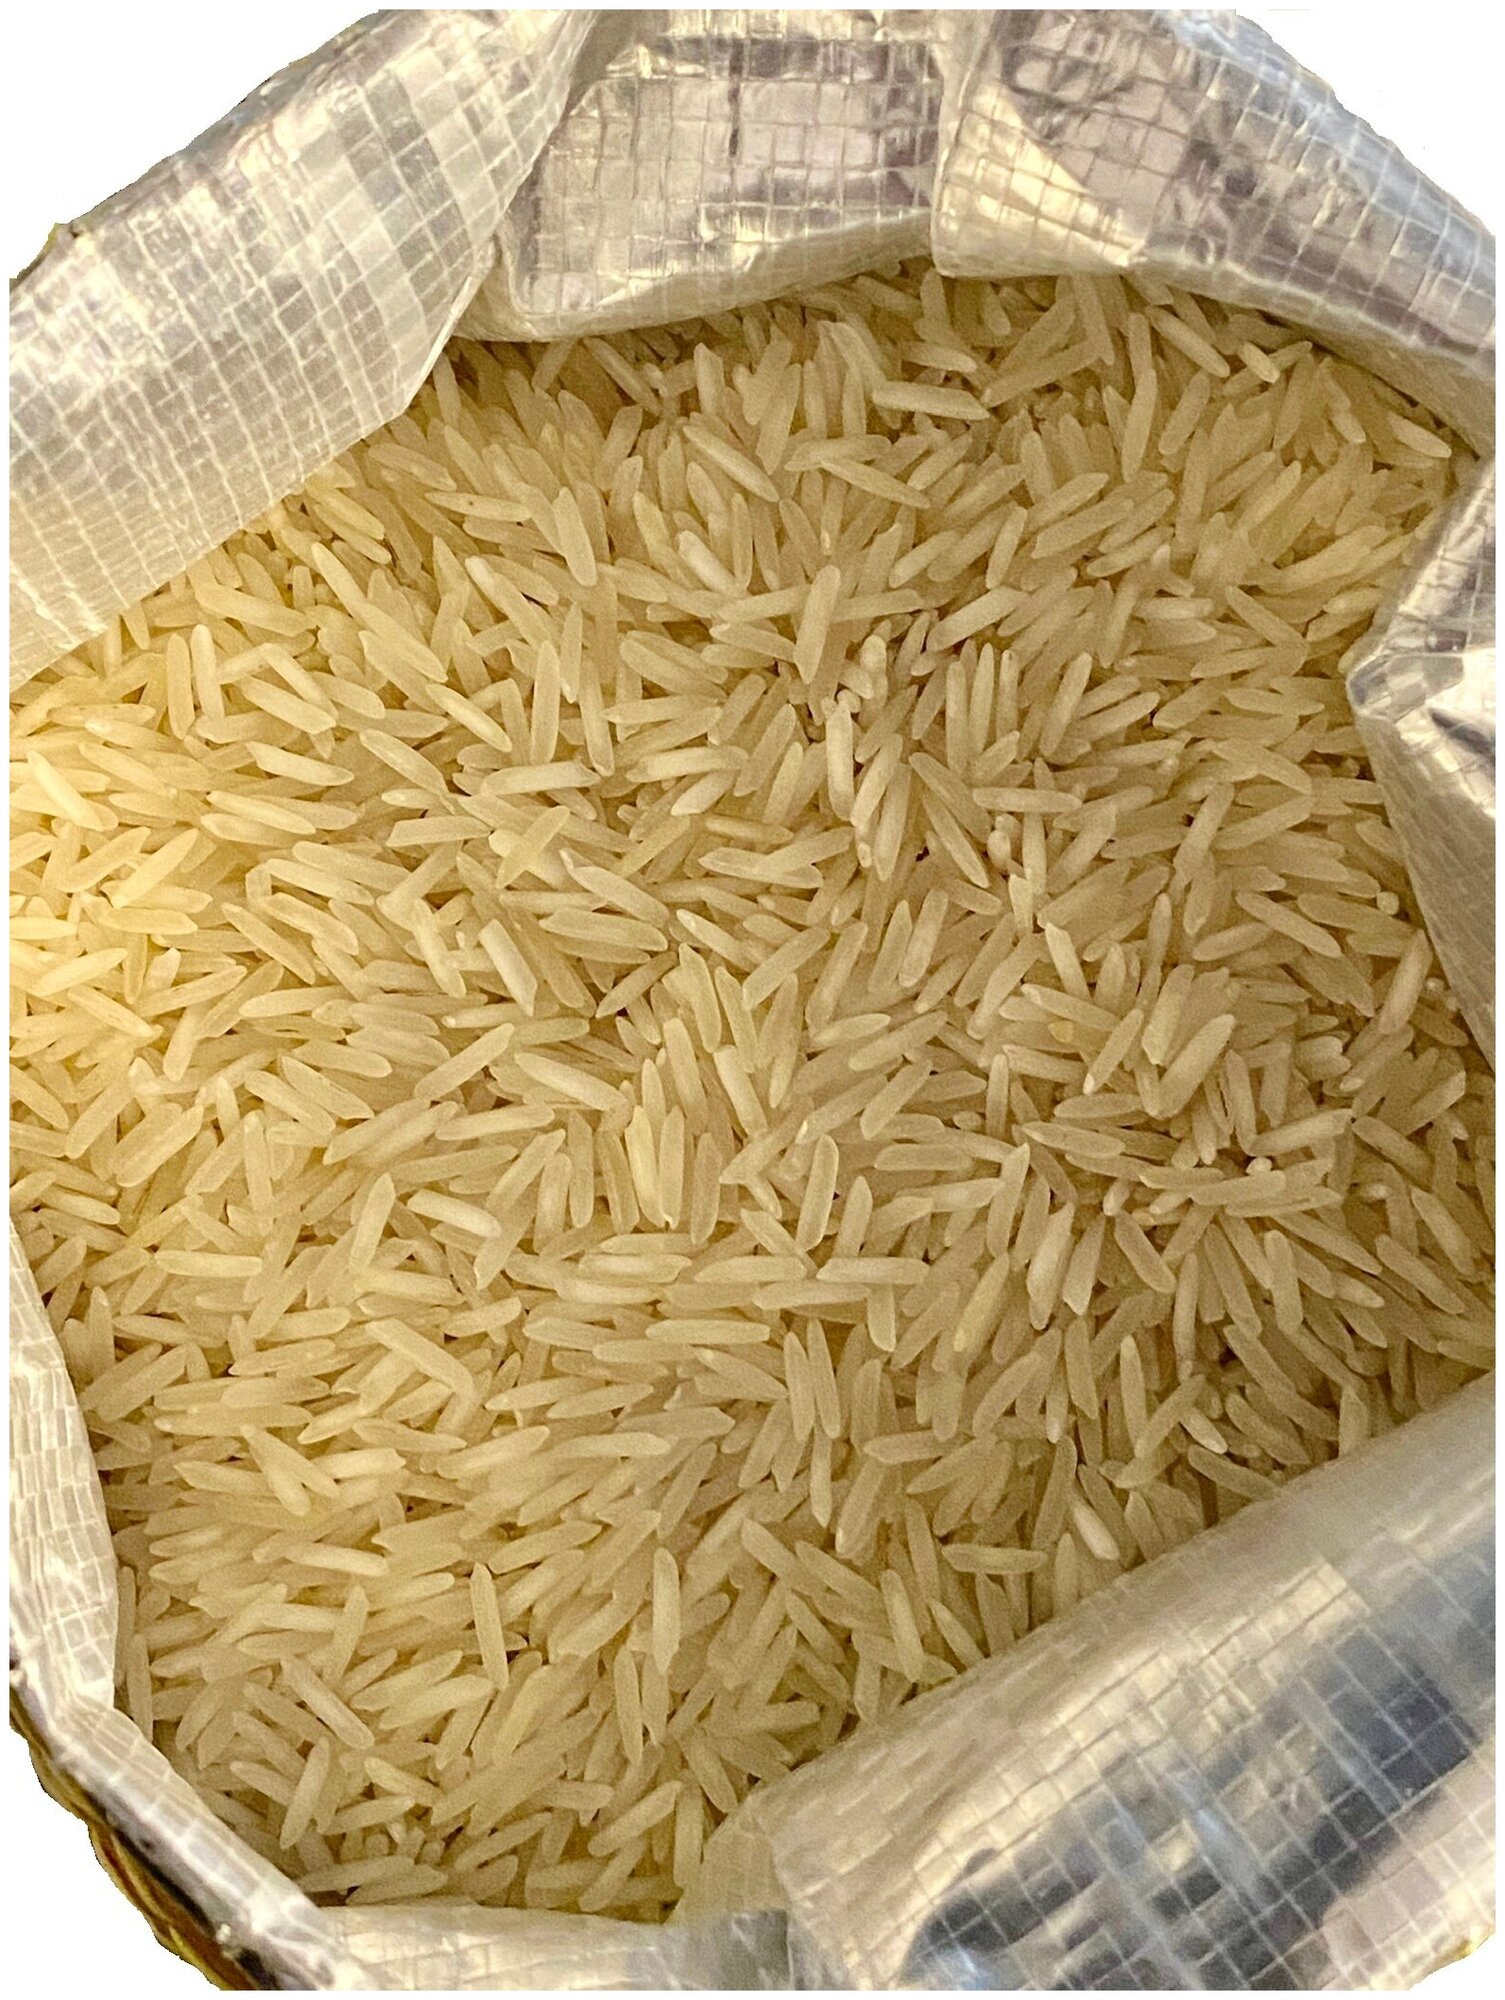 Рис индийский басмати традиционный, непропаренный DAS 5 кг. упаковка мешок - фотография № 4